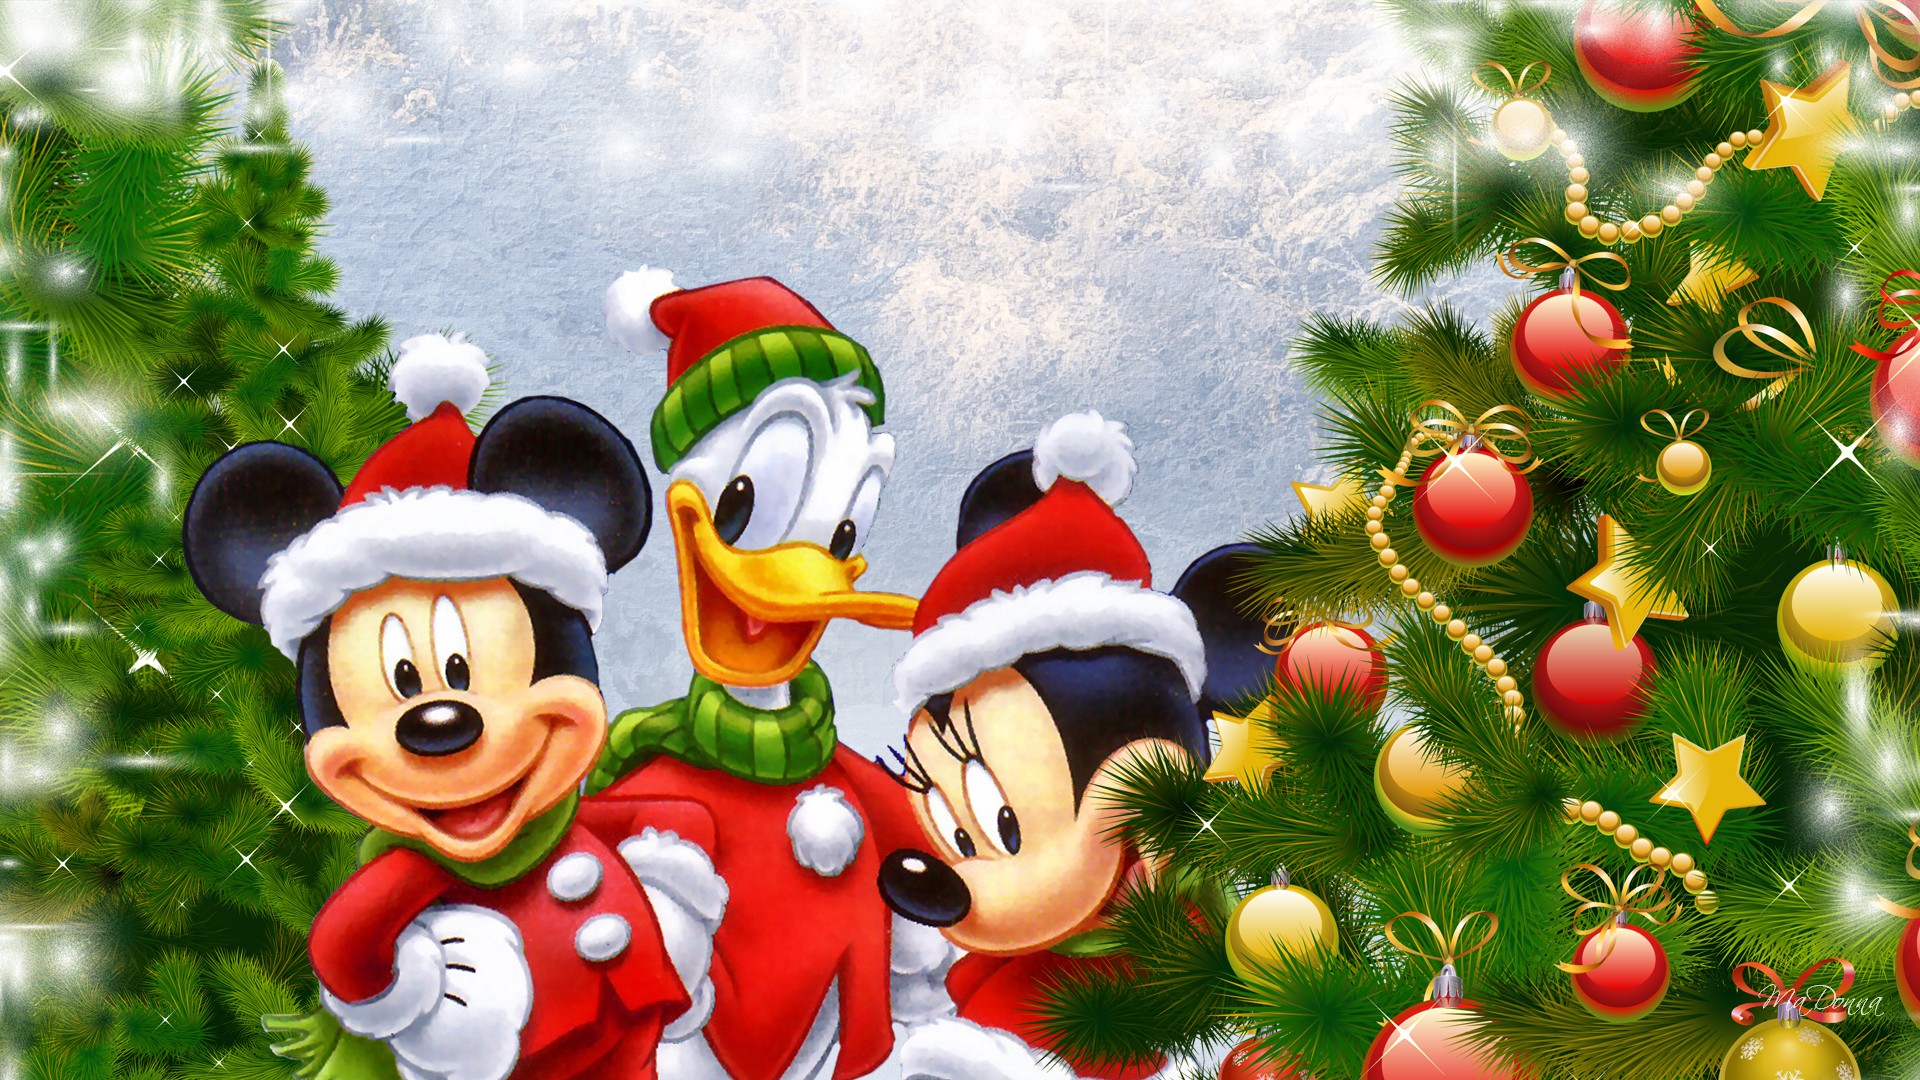 Hình ảnh chuột Mickey đáng yêu dễ thương cho năm Canh Tý - [Kích thước hình ảnh: 1920x1080 px]